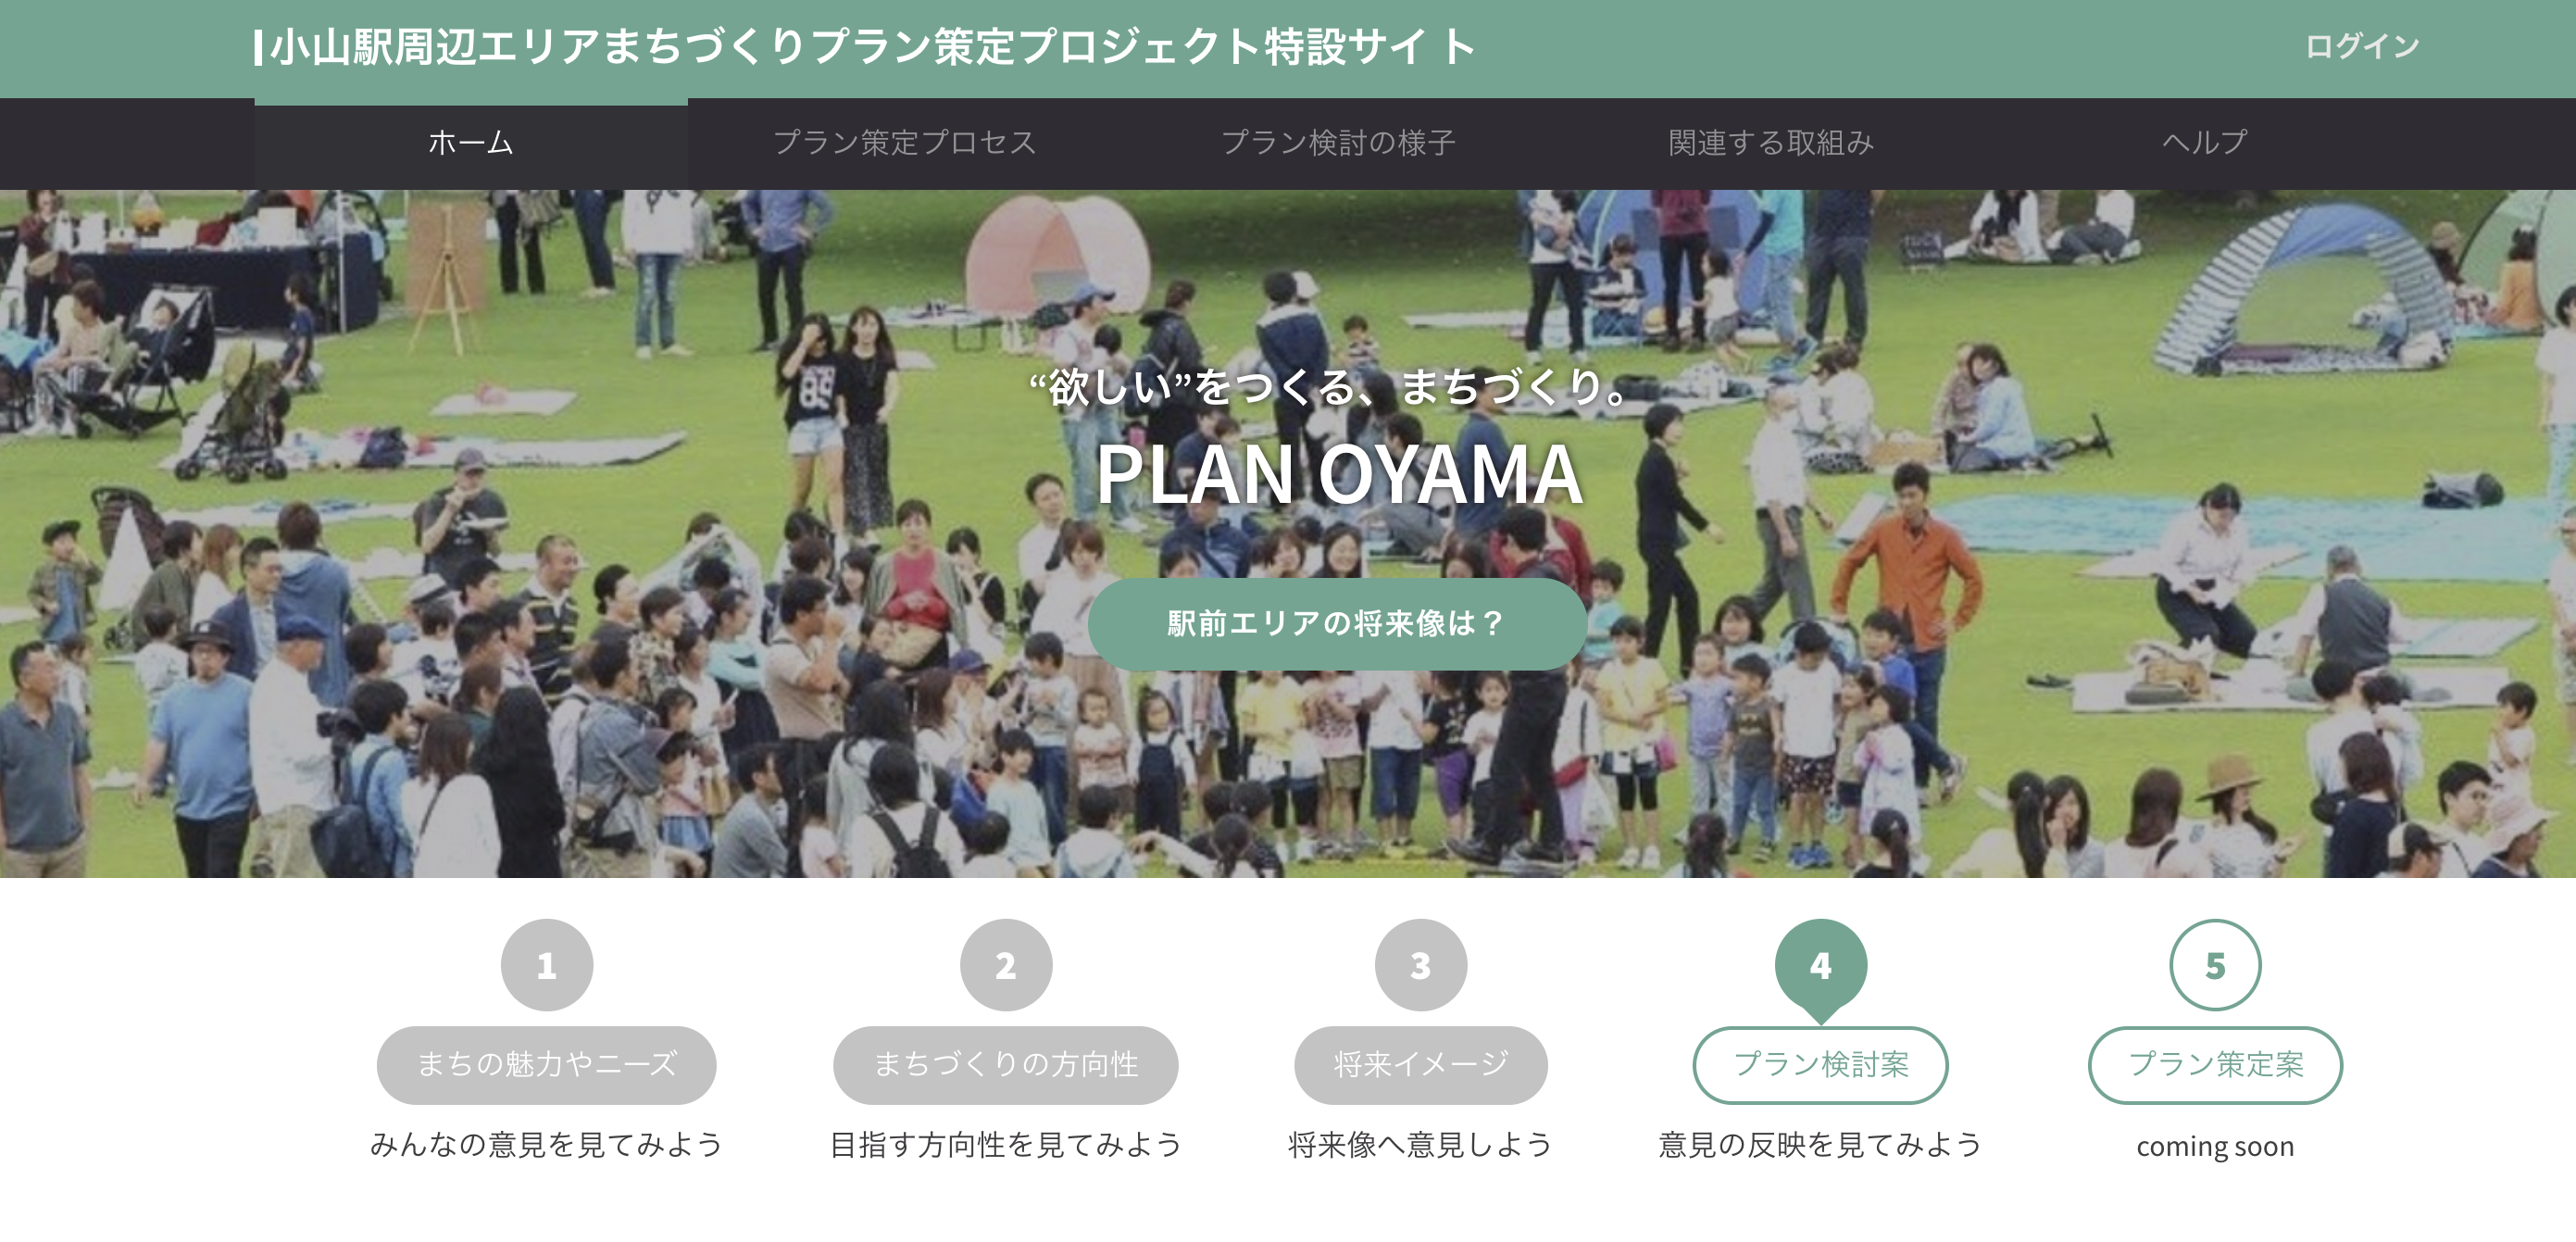 栃木県小山市、特設サイトで市民の要望を反映する実証実験の結果を公開[ニュース]